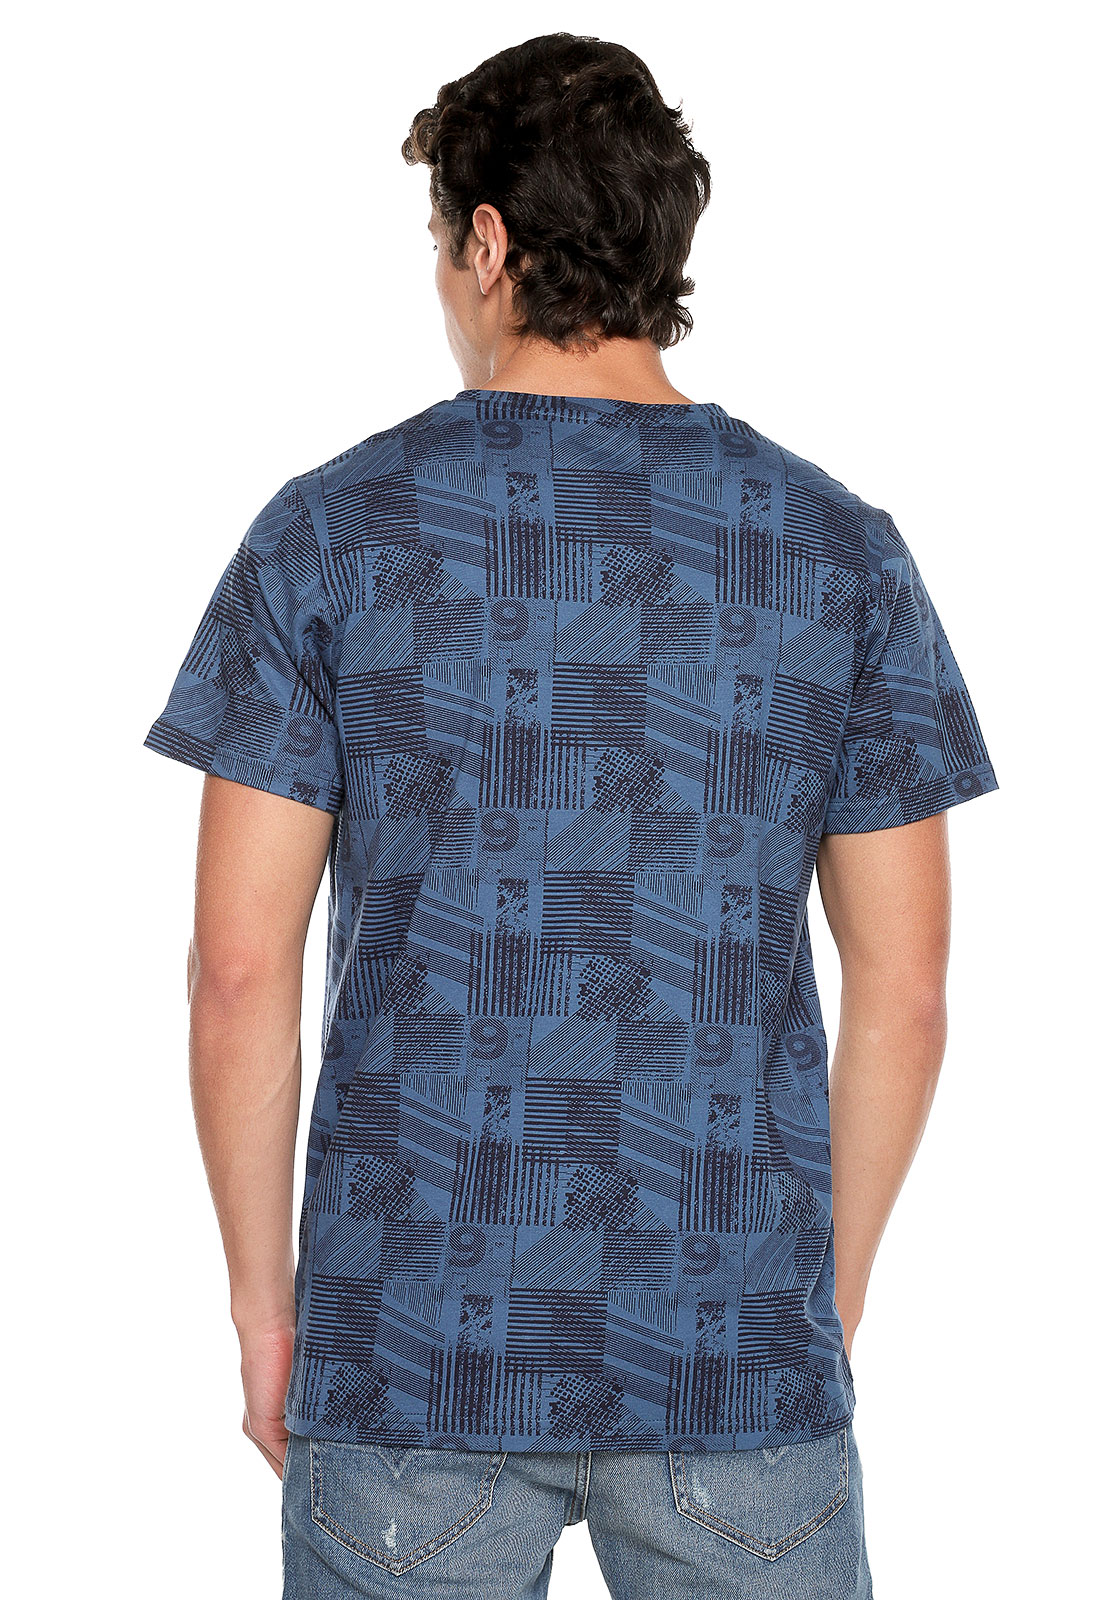 1104px x 1600px - T-shirt para hombre azul con nÃºmeros - Rachid Style